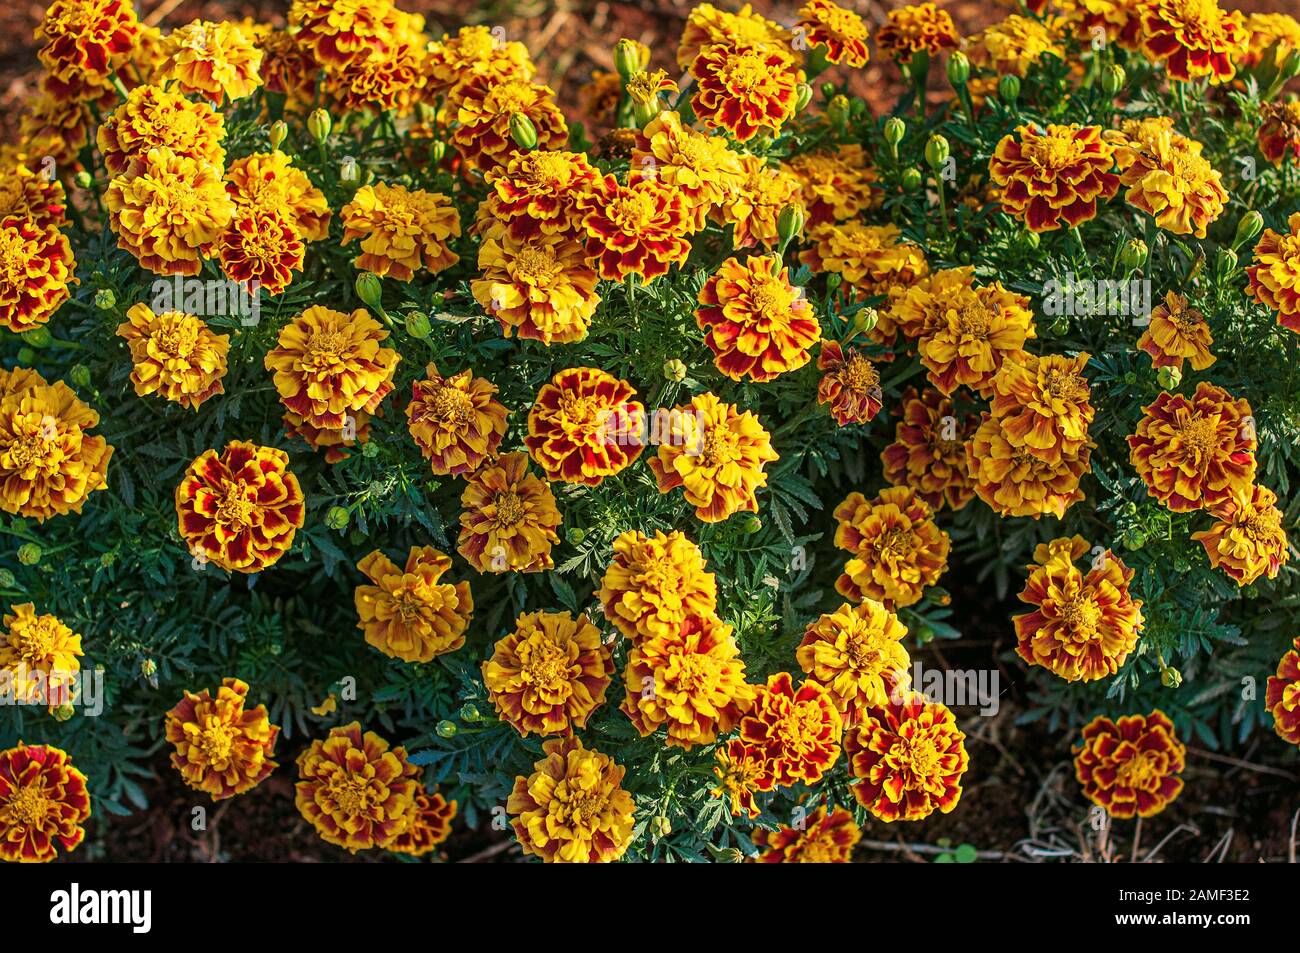 Blooming Tagete francese in giardino, Tagetes Patula, giallo arancio mazzo di fiori, foglie verdi piccolo arbusto, il fuoco selettivo. Foto Stock